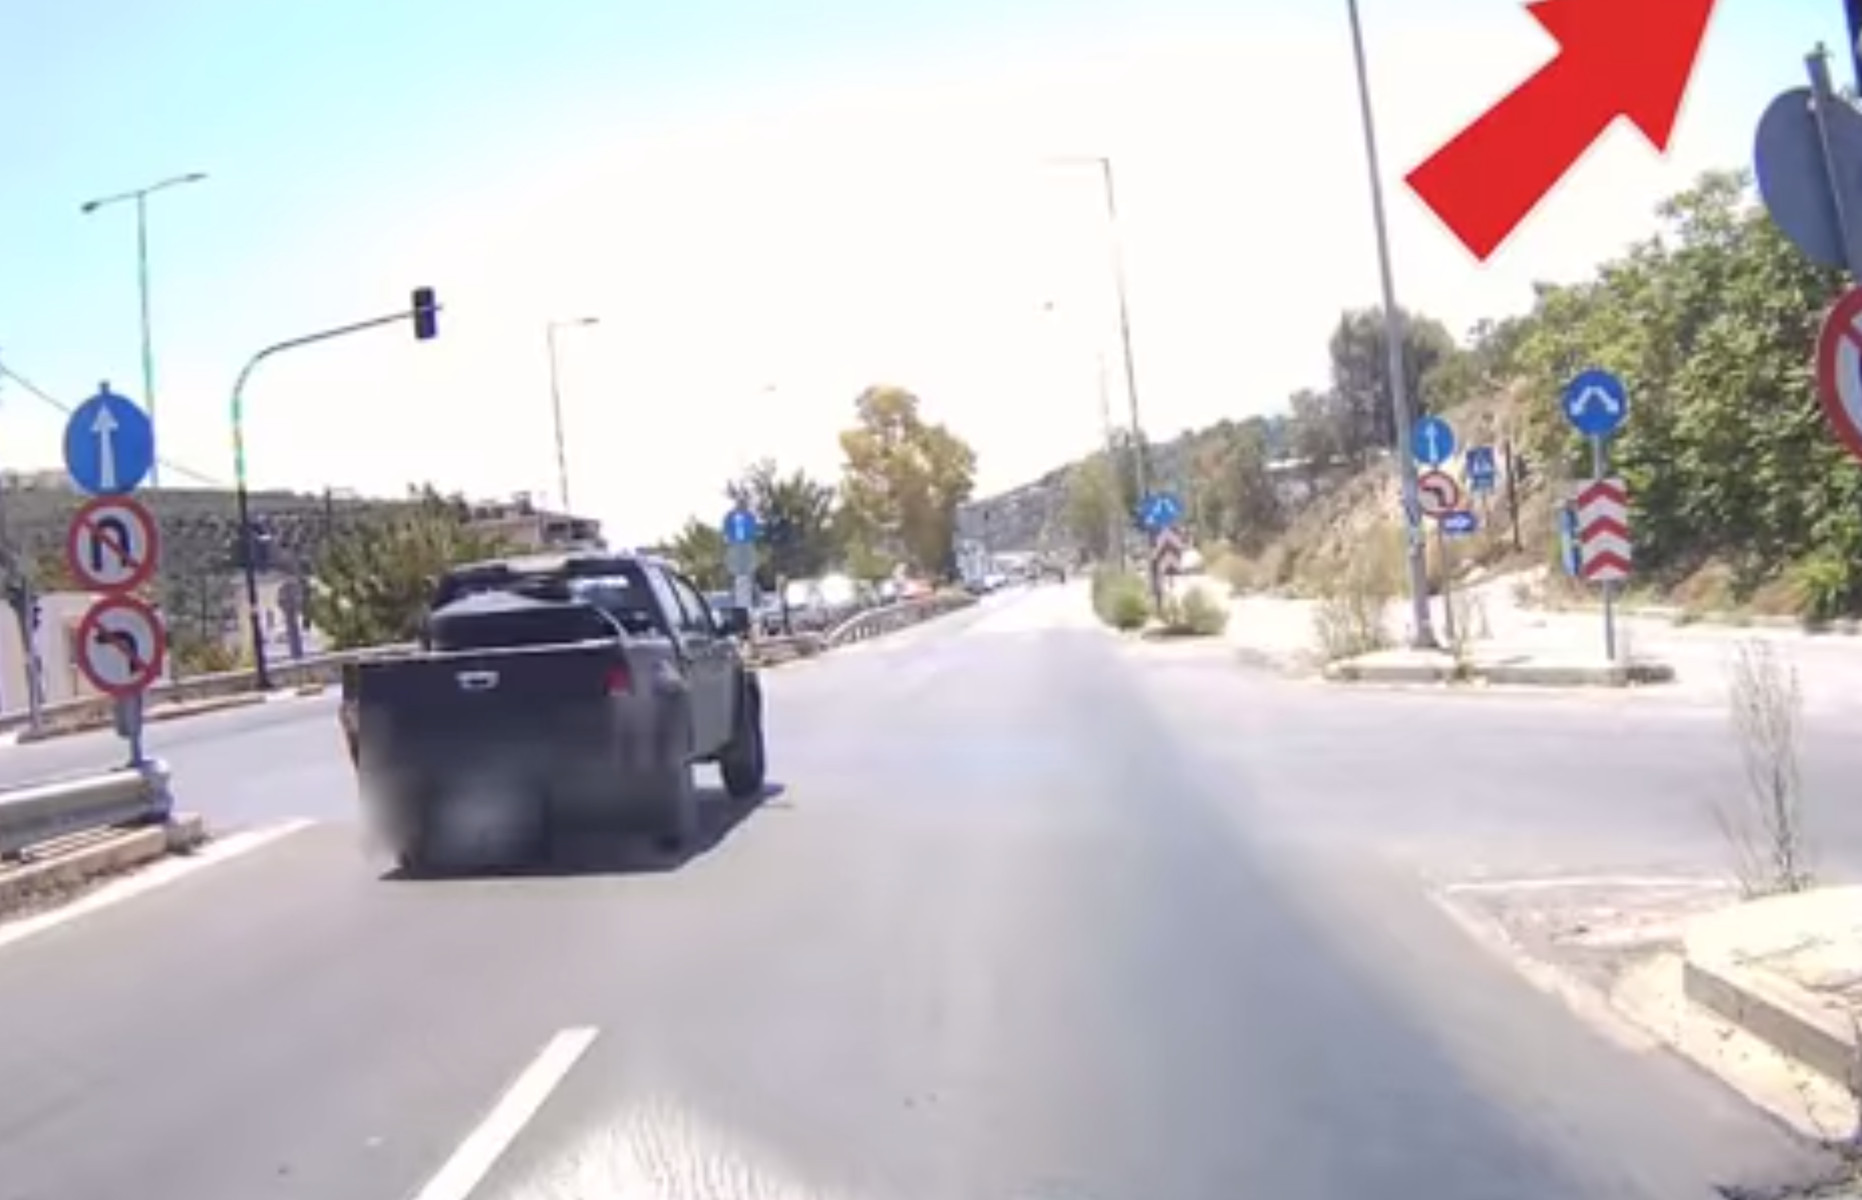 Ηράκλειο: «Μάγκας» οδηγός αγροτικού παραβιάζει κόκκινο φανάρι με μεγάλη ταχύτητα – Σοκαριστικό βίντεο